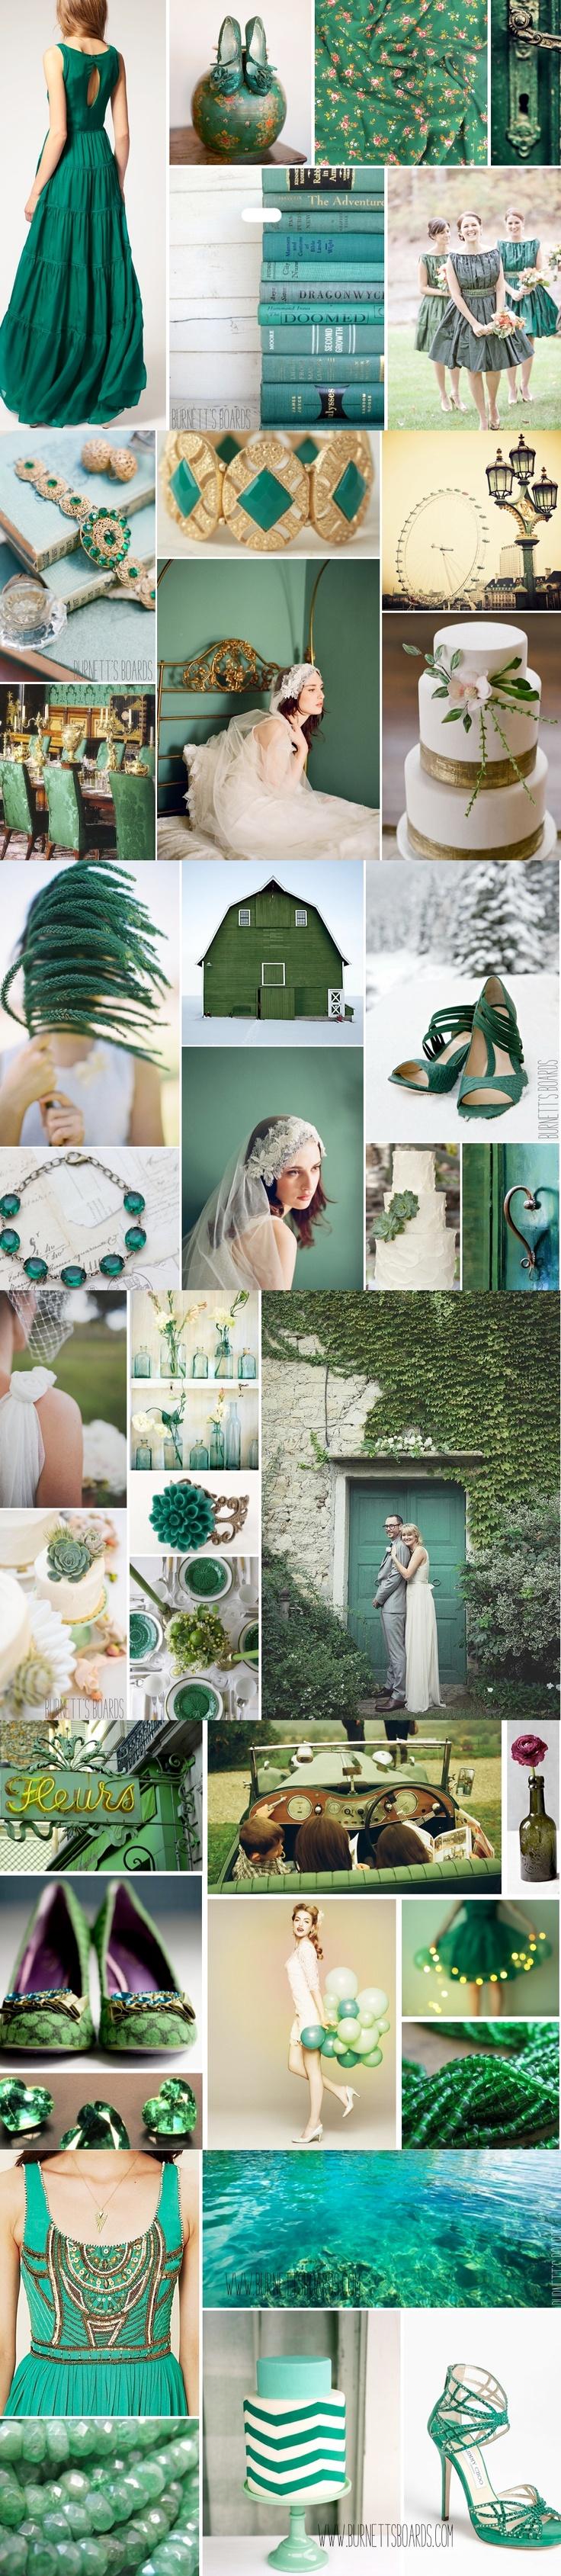 Hochzeit - Es ist offiziell - Pantone Farbe des Jahres für 2013 Ist Emerald!